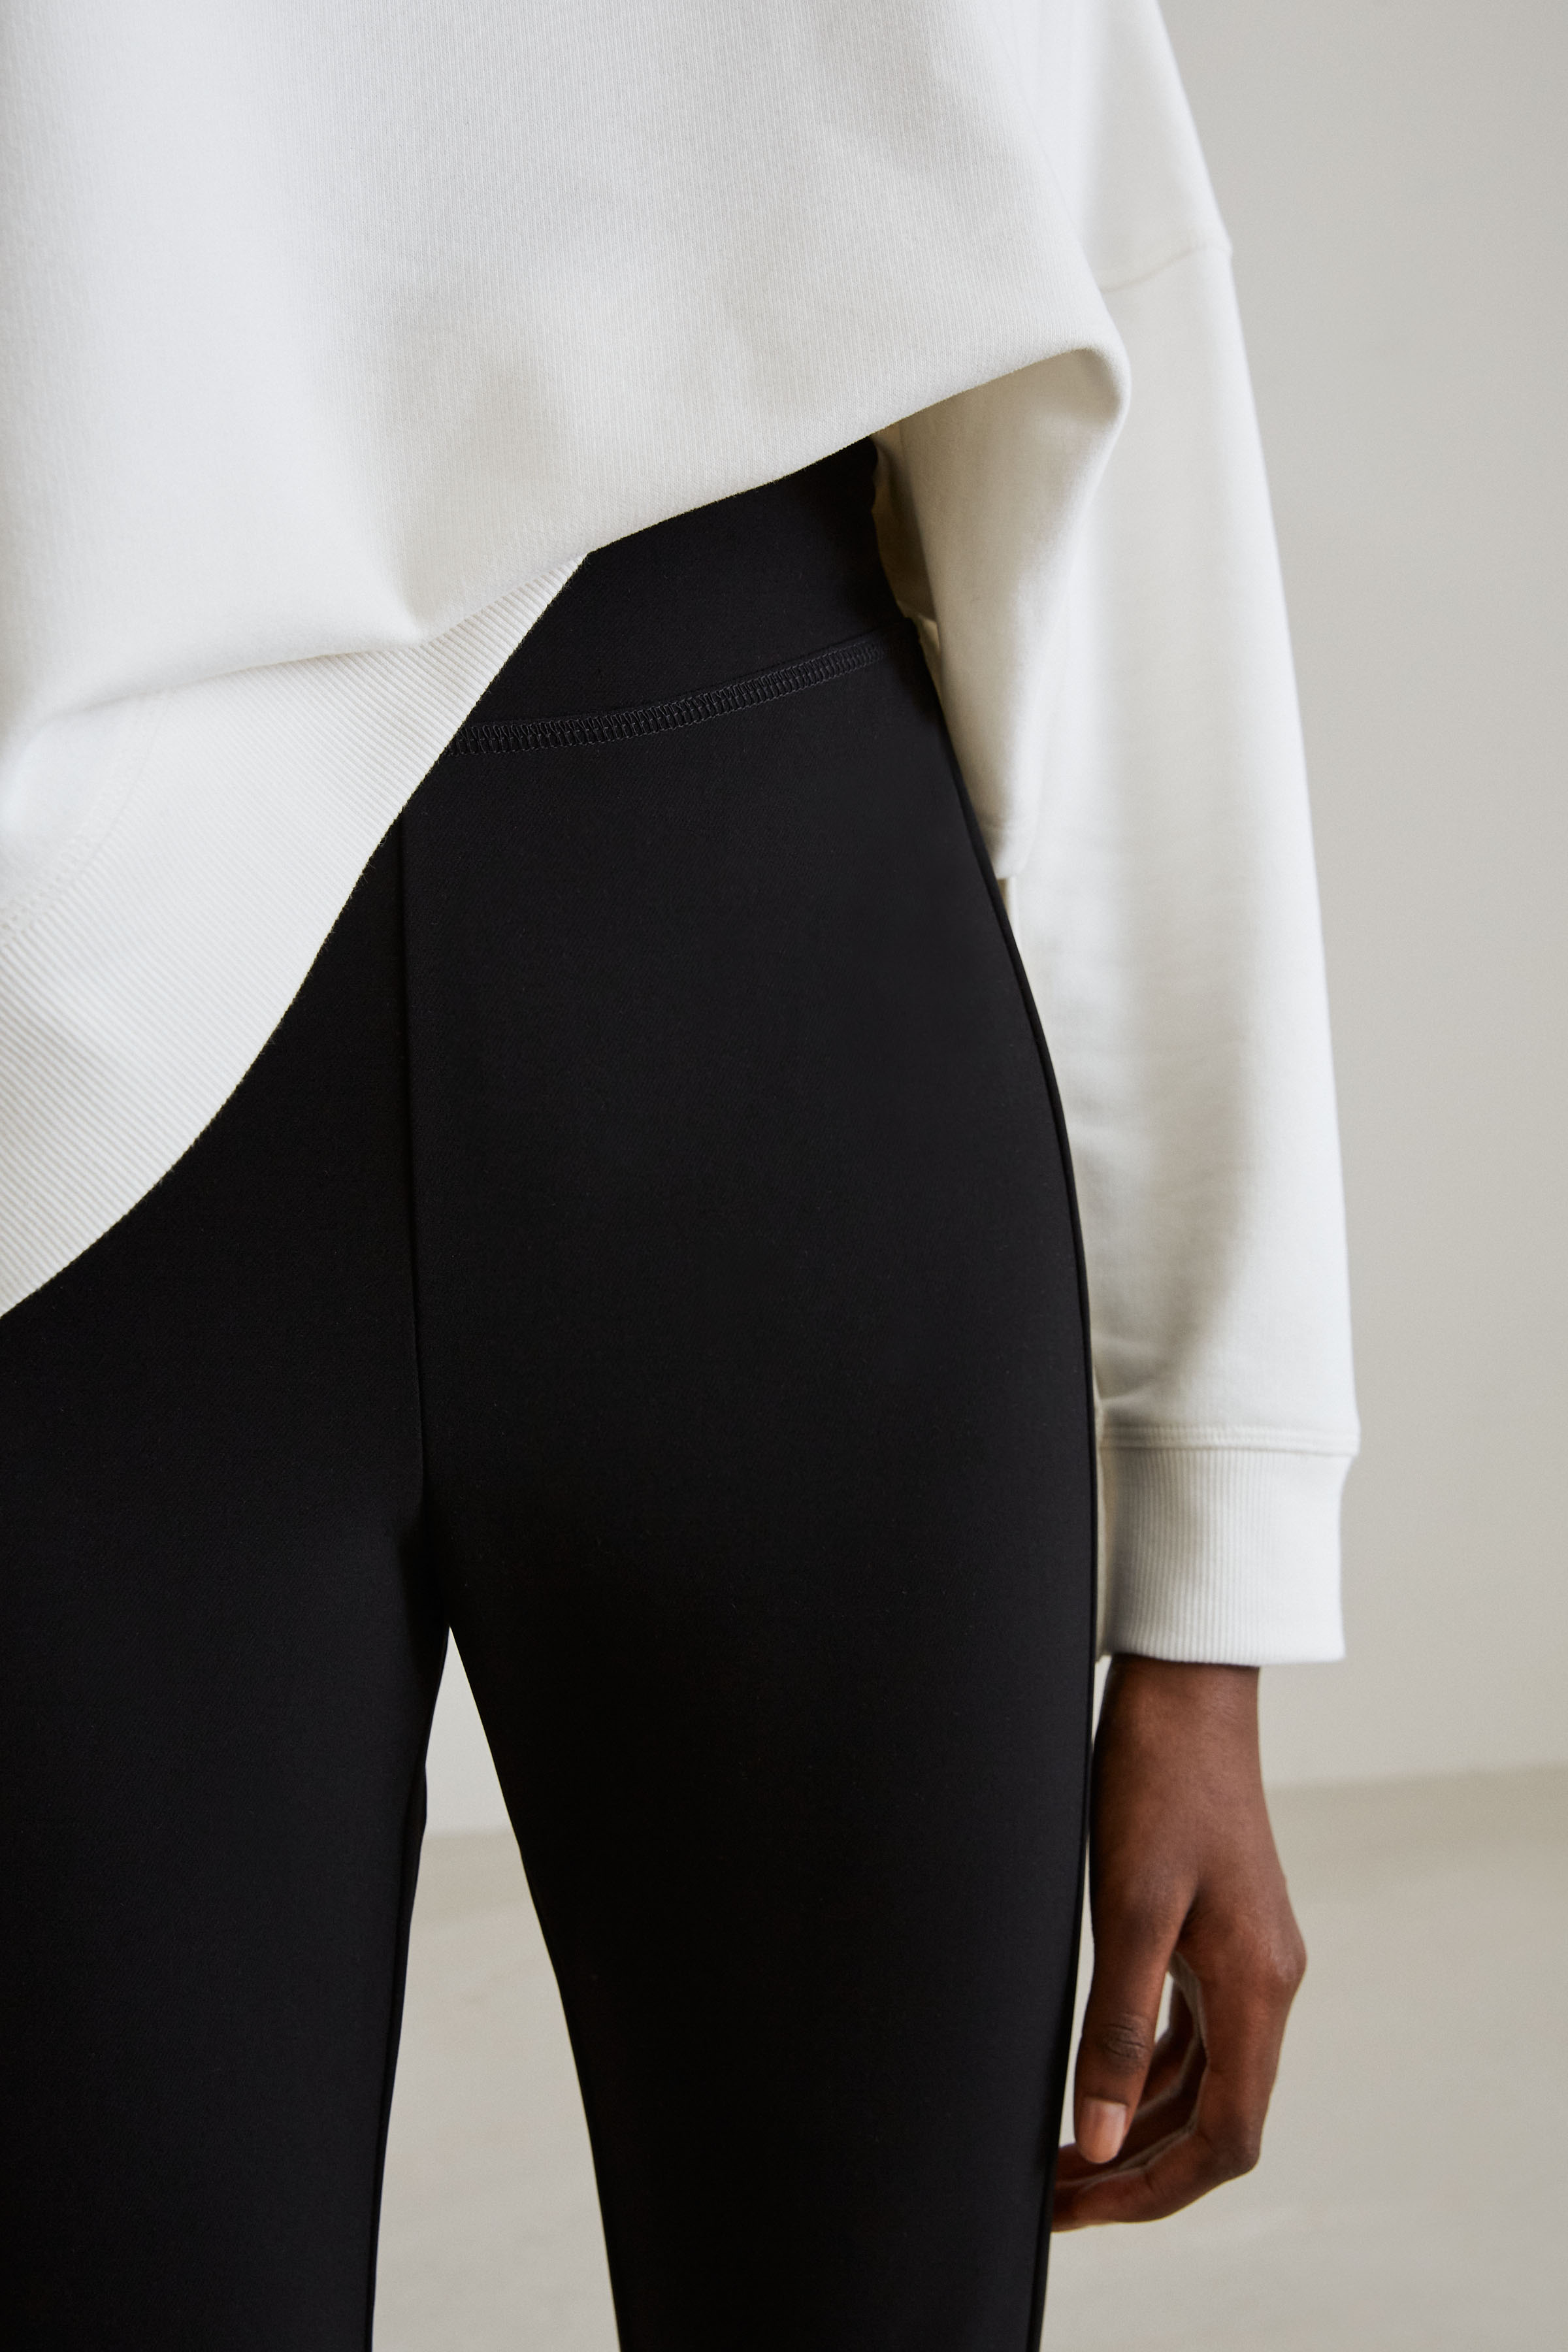 verrassing Luxe pols leggings SHAPER online bestellen bij DRYKORN